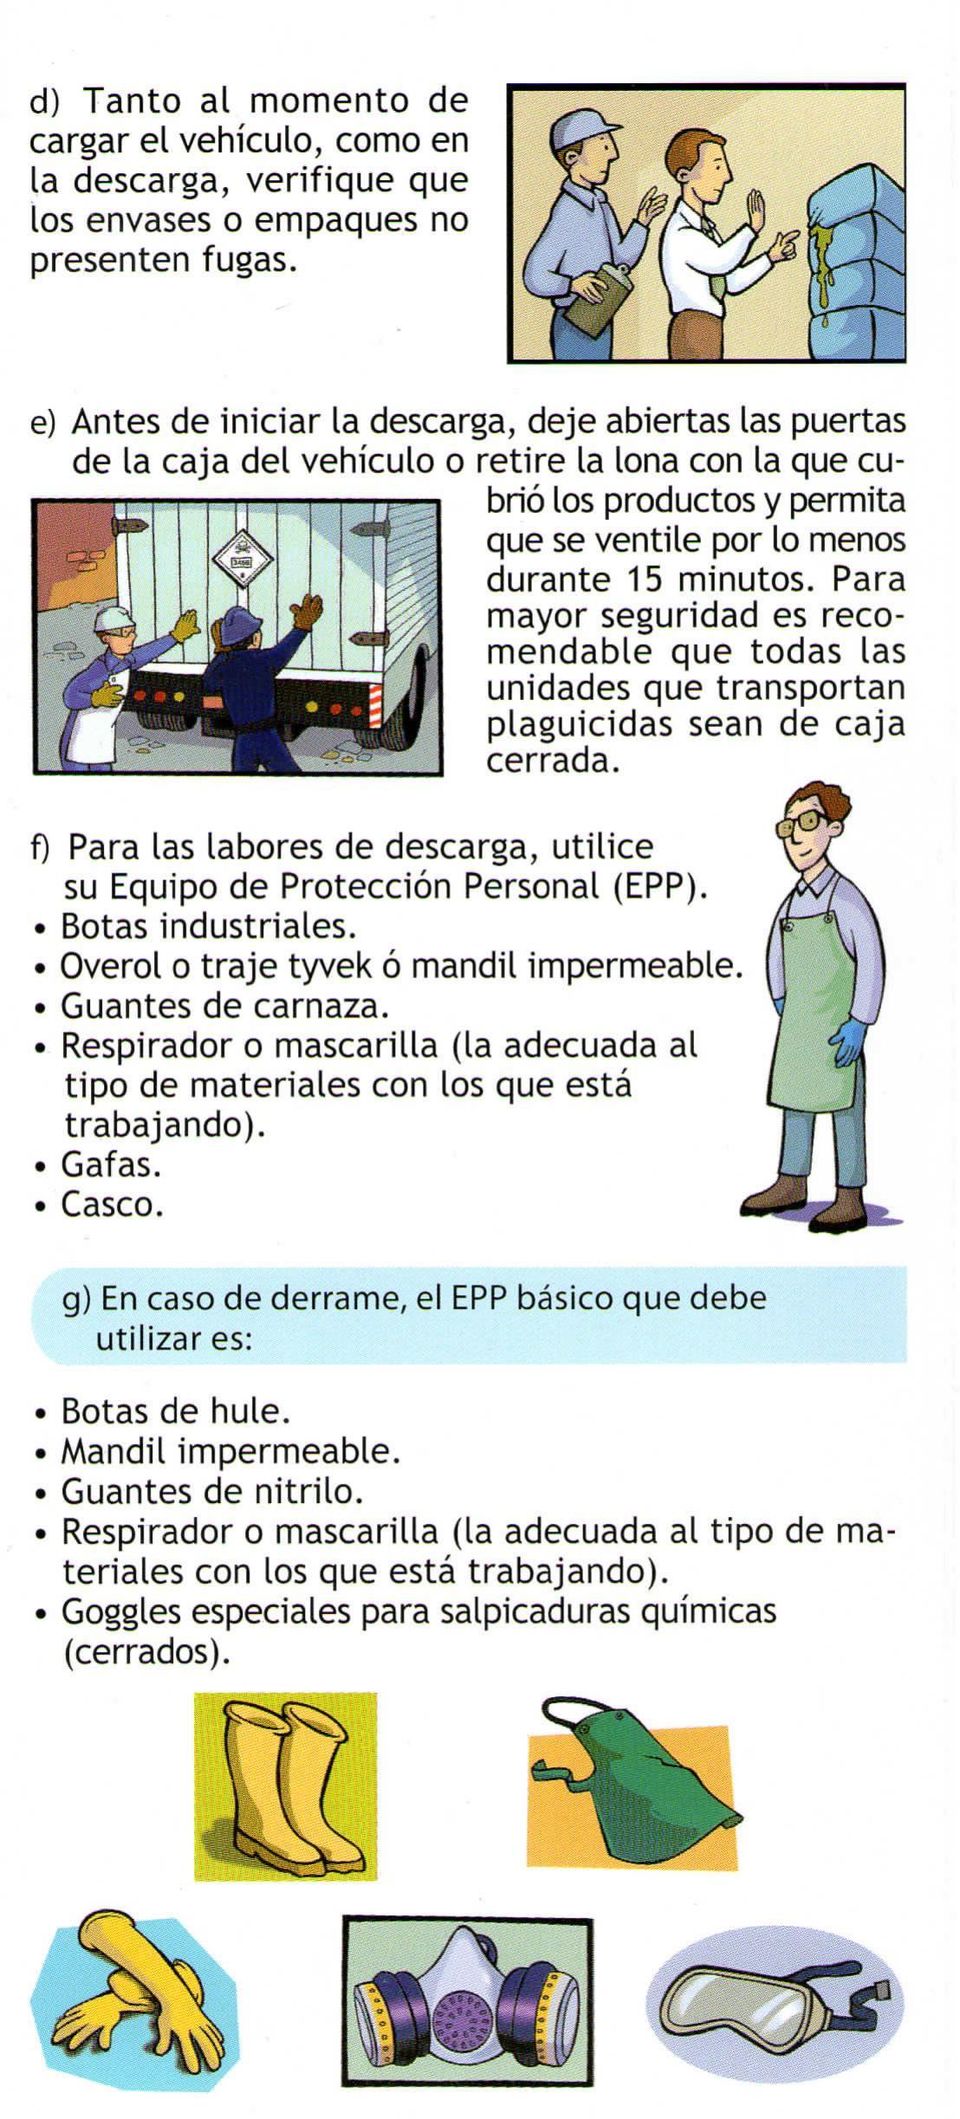 Para mayor seguridad es recomendable que todas las unidades que transportan plaguicidas sean de caja cerrada. f) Para las labores de descarga, utilice su Equipo de Protección Personal (EPP).